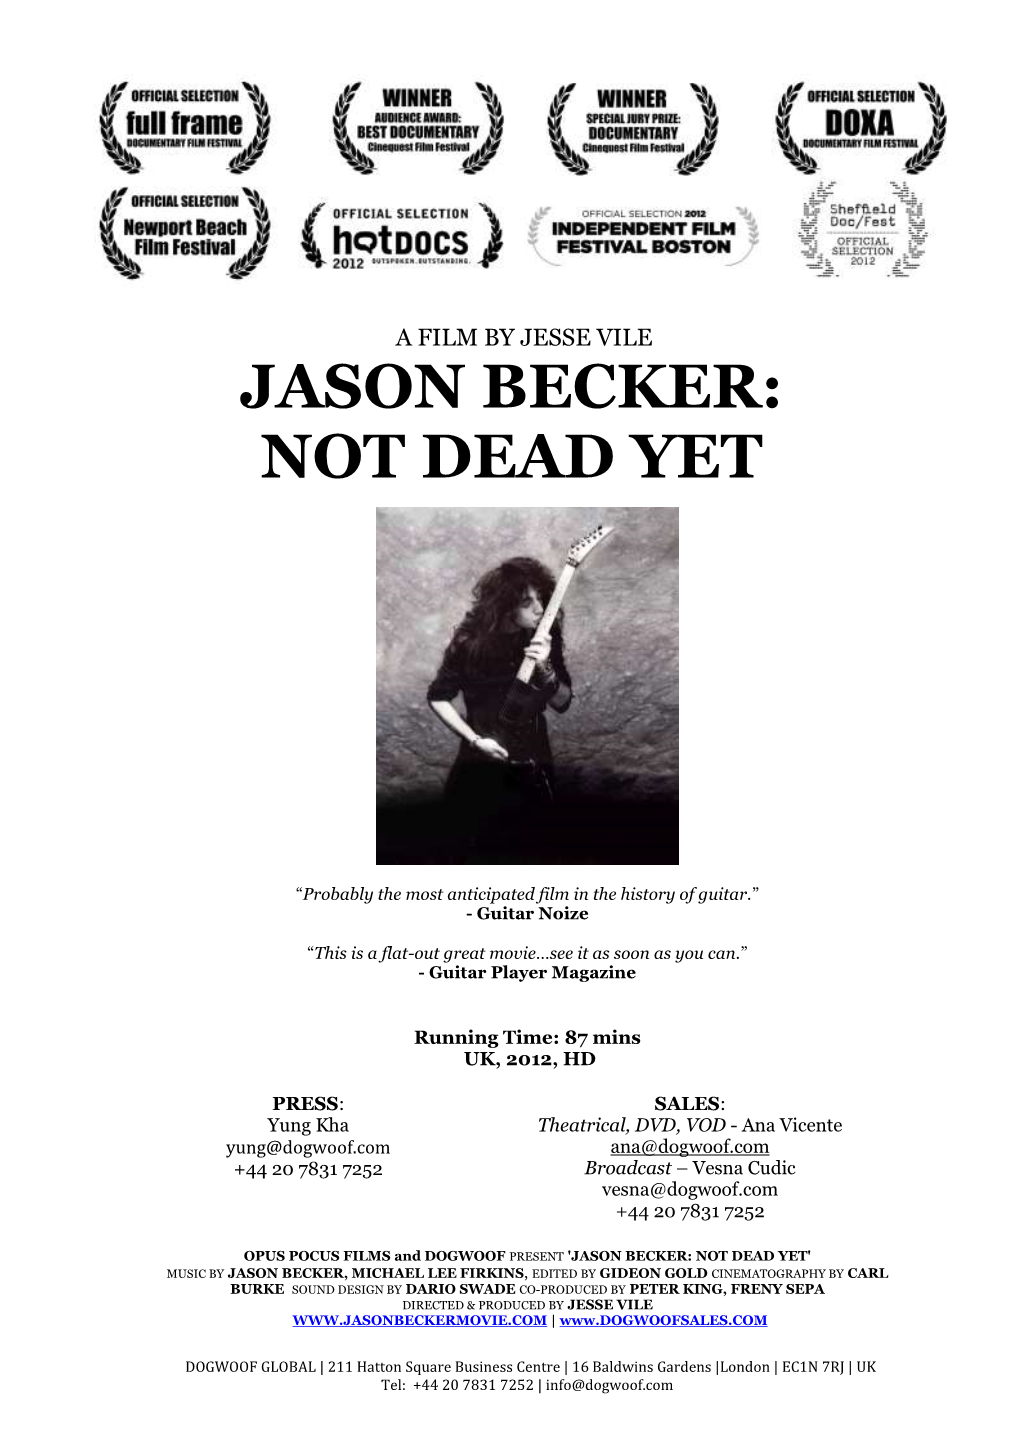 Jason Becker: Not Dead Yet